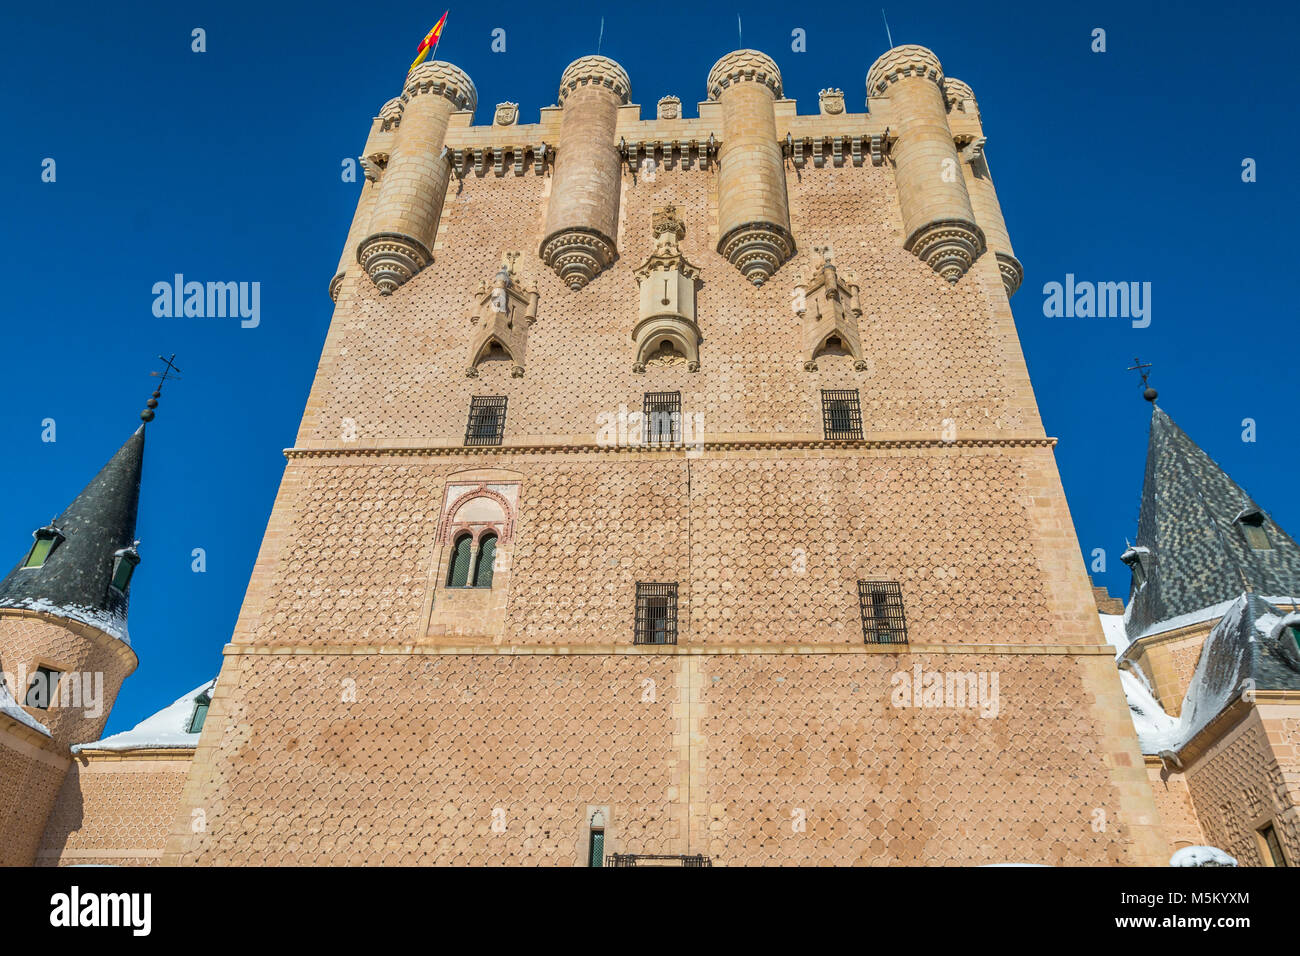 Tower in the Alcazar of Segovia Stock Photo